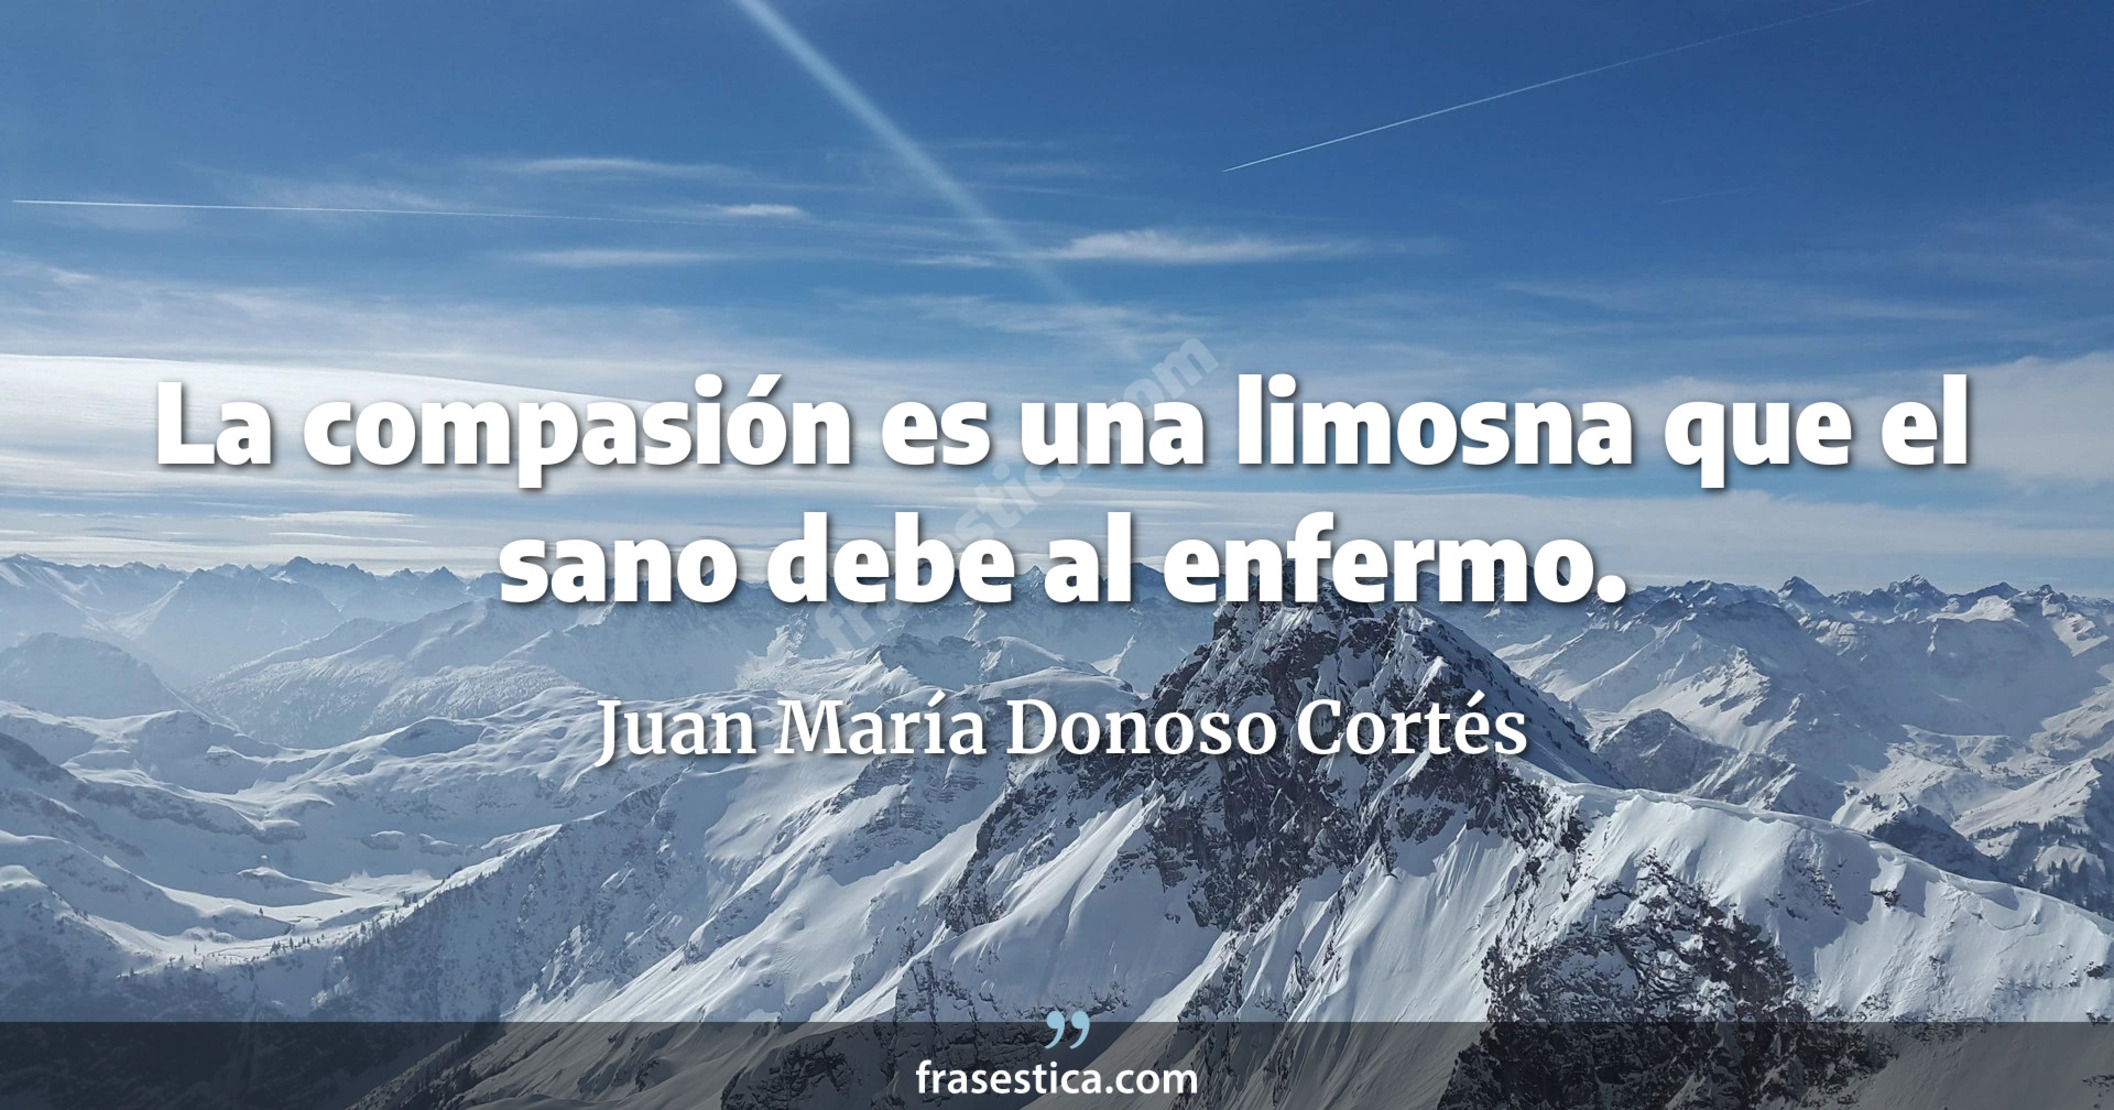 La compasión es una limosna que el sano debe al enfermo. - Juan María Donoso Cortés